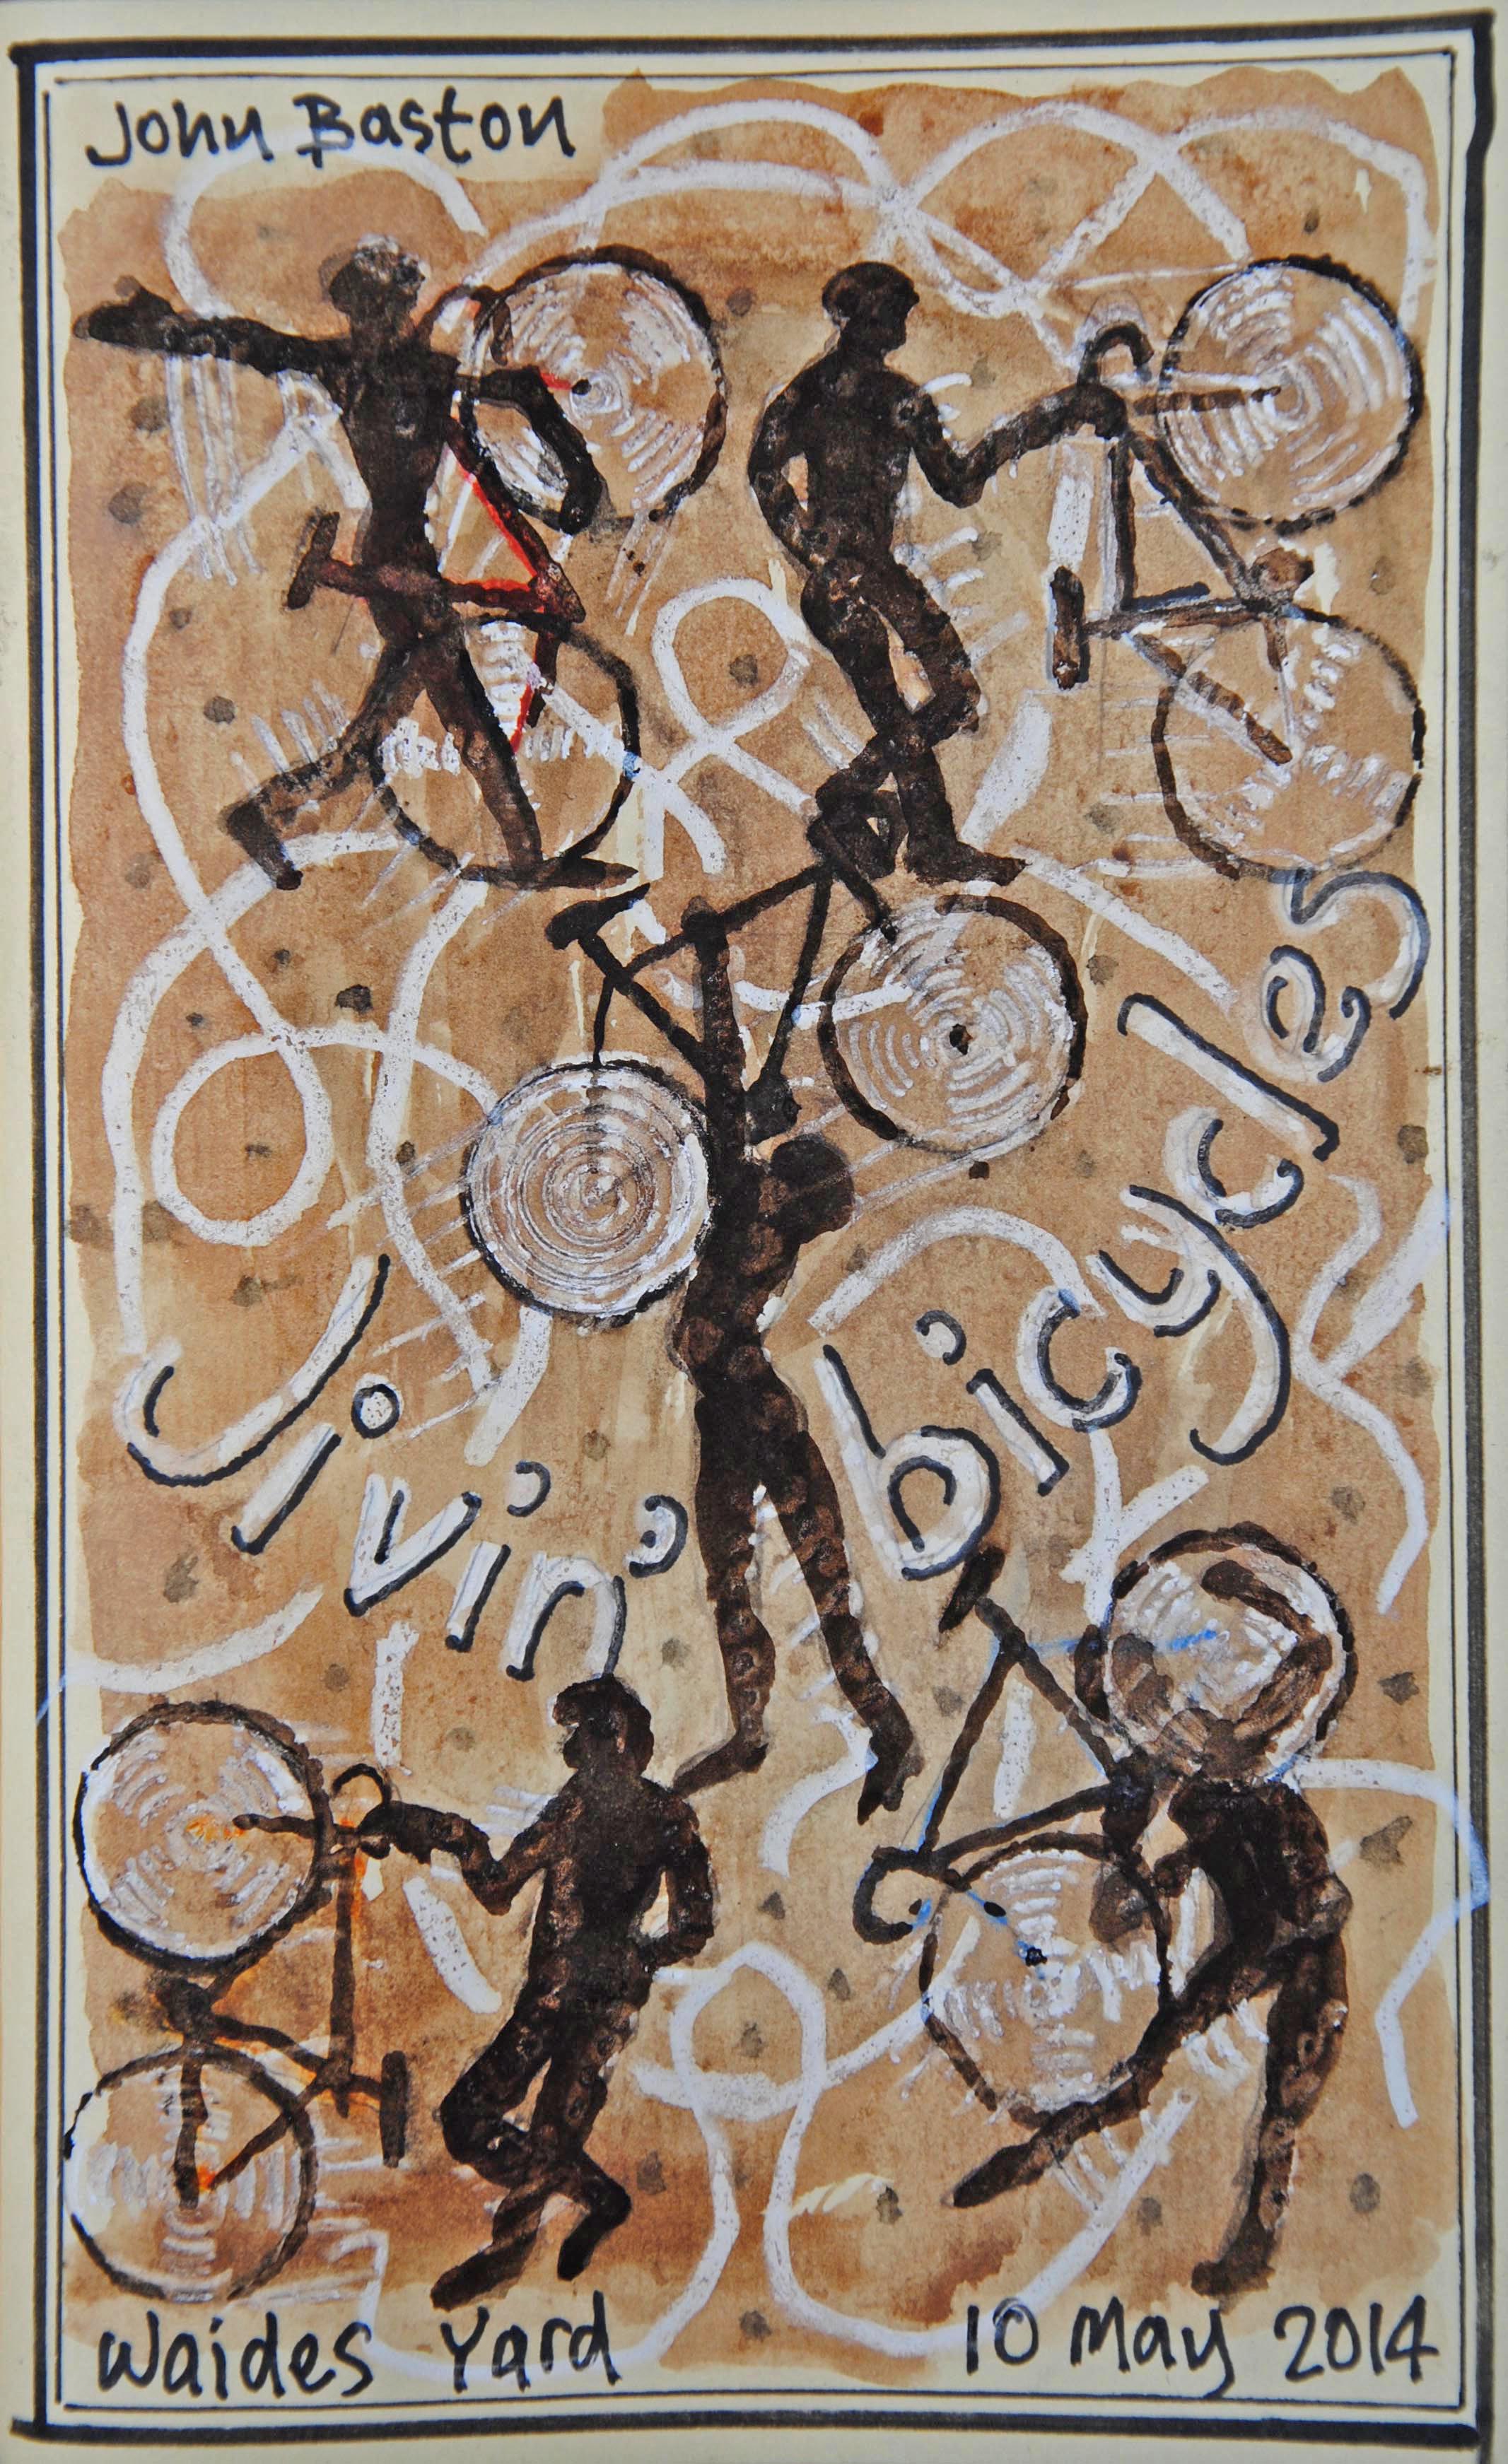 3 Jivin' bicycles by John Baston